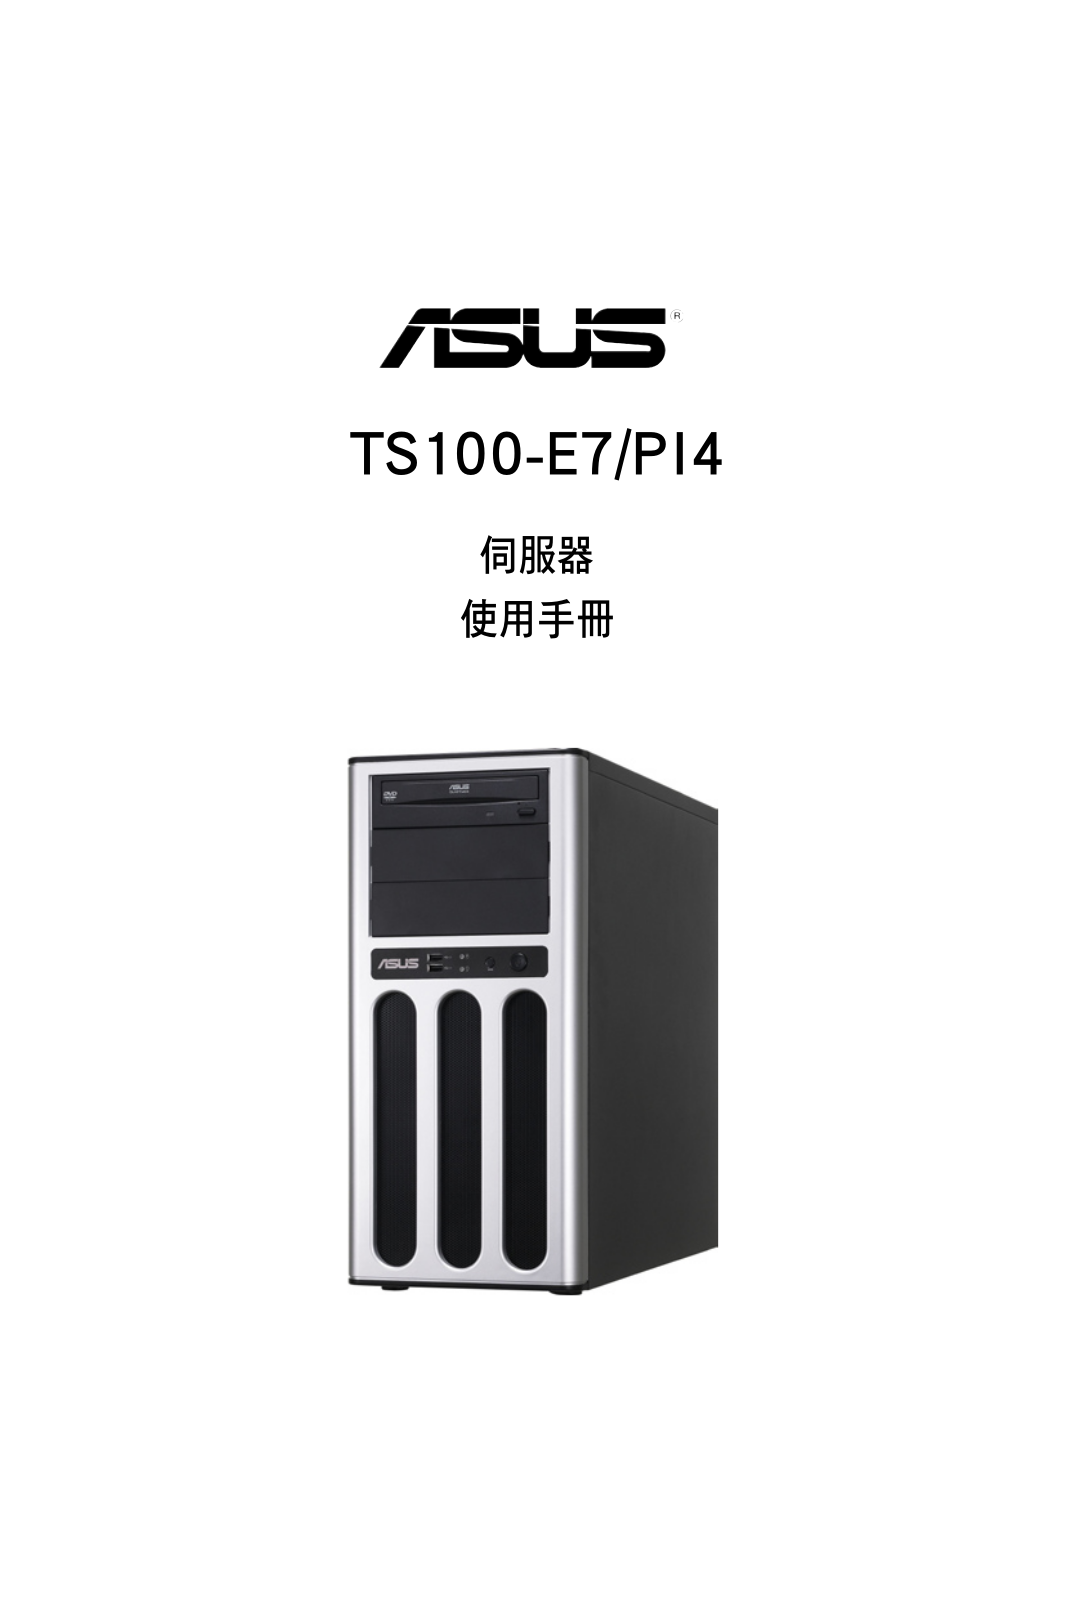 ASUS TS100-E7-PI4, T6860 User Manual